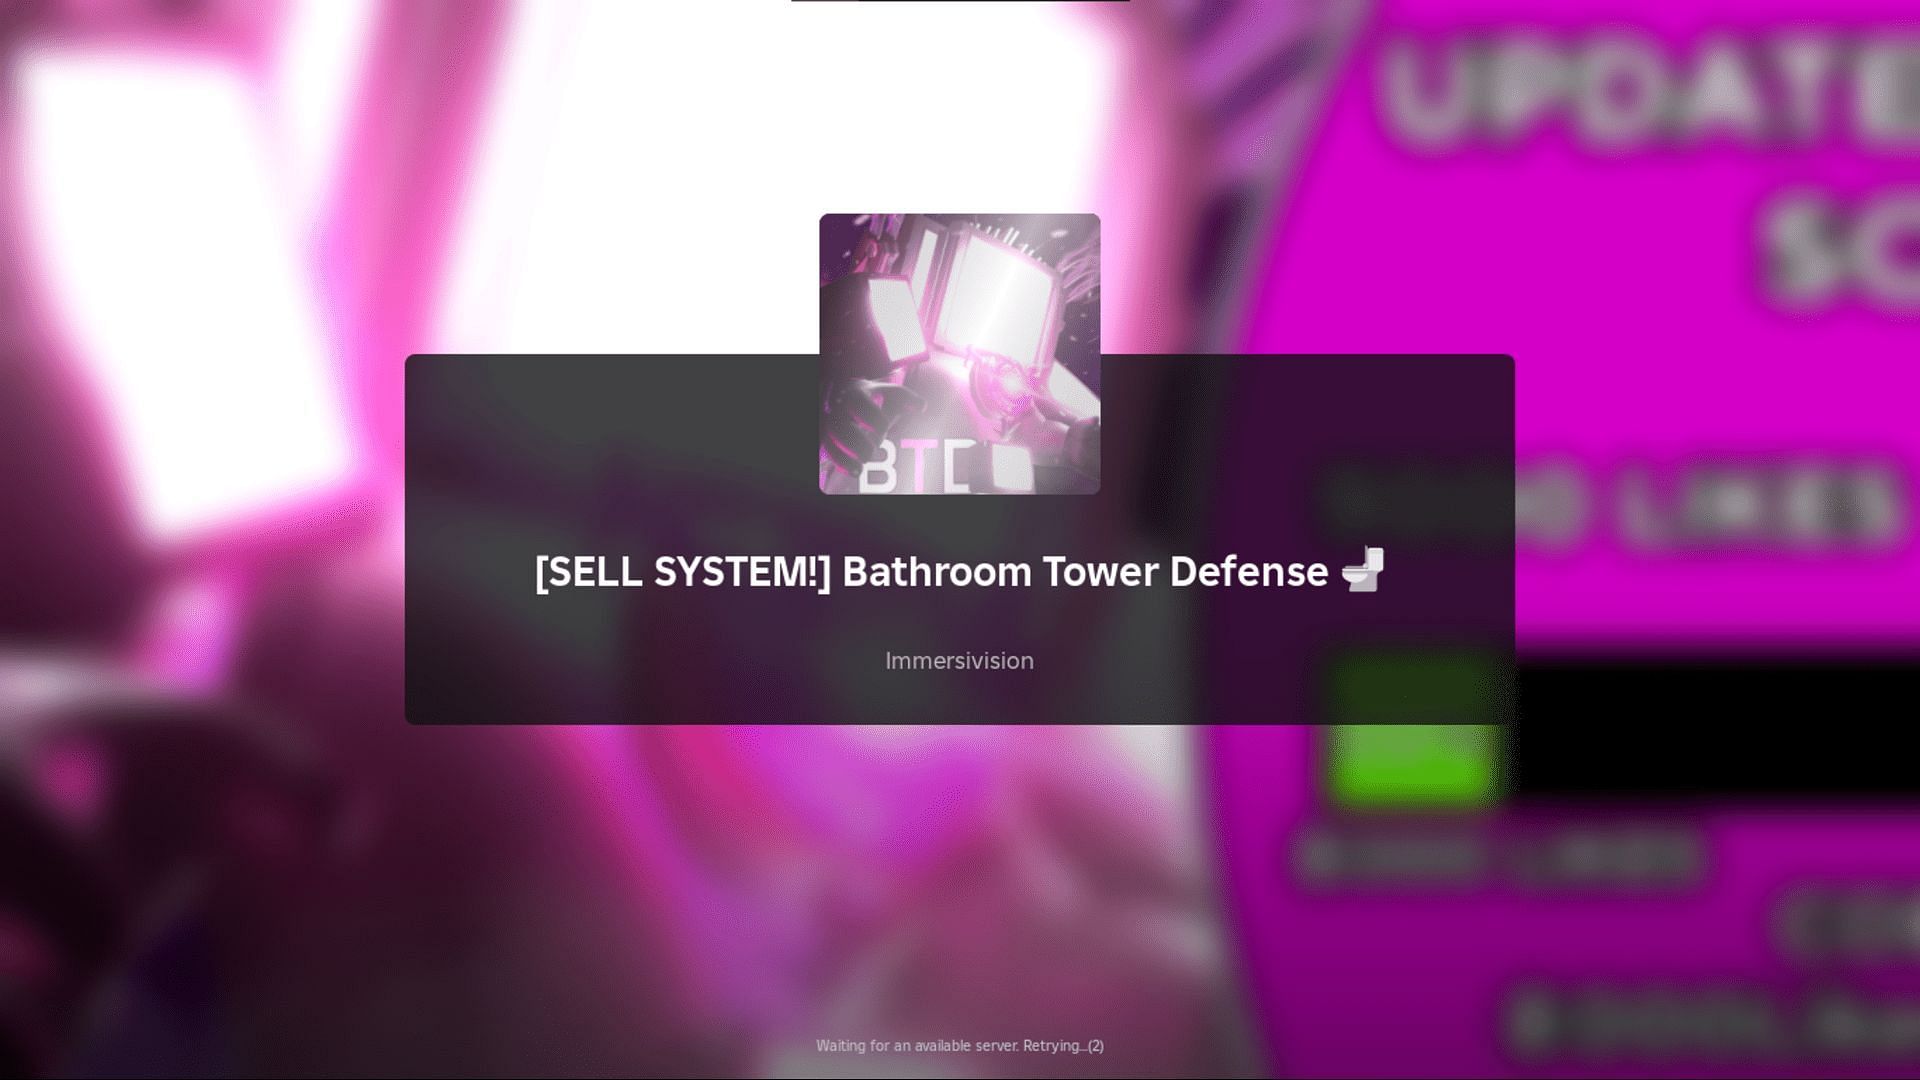 Bathroom Tower Defense codes